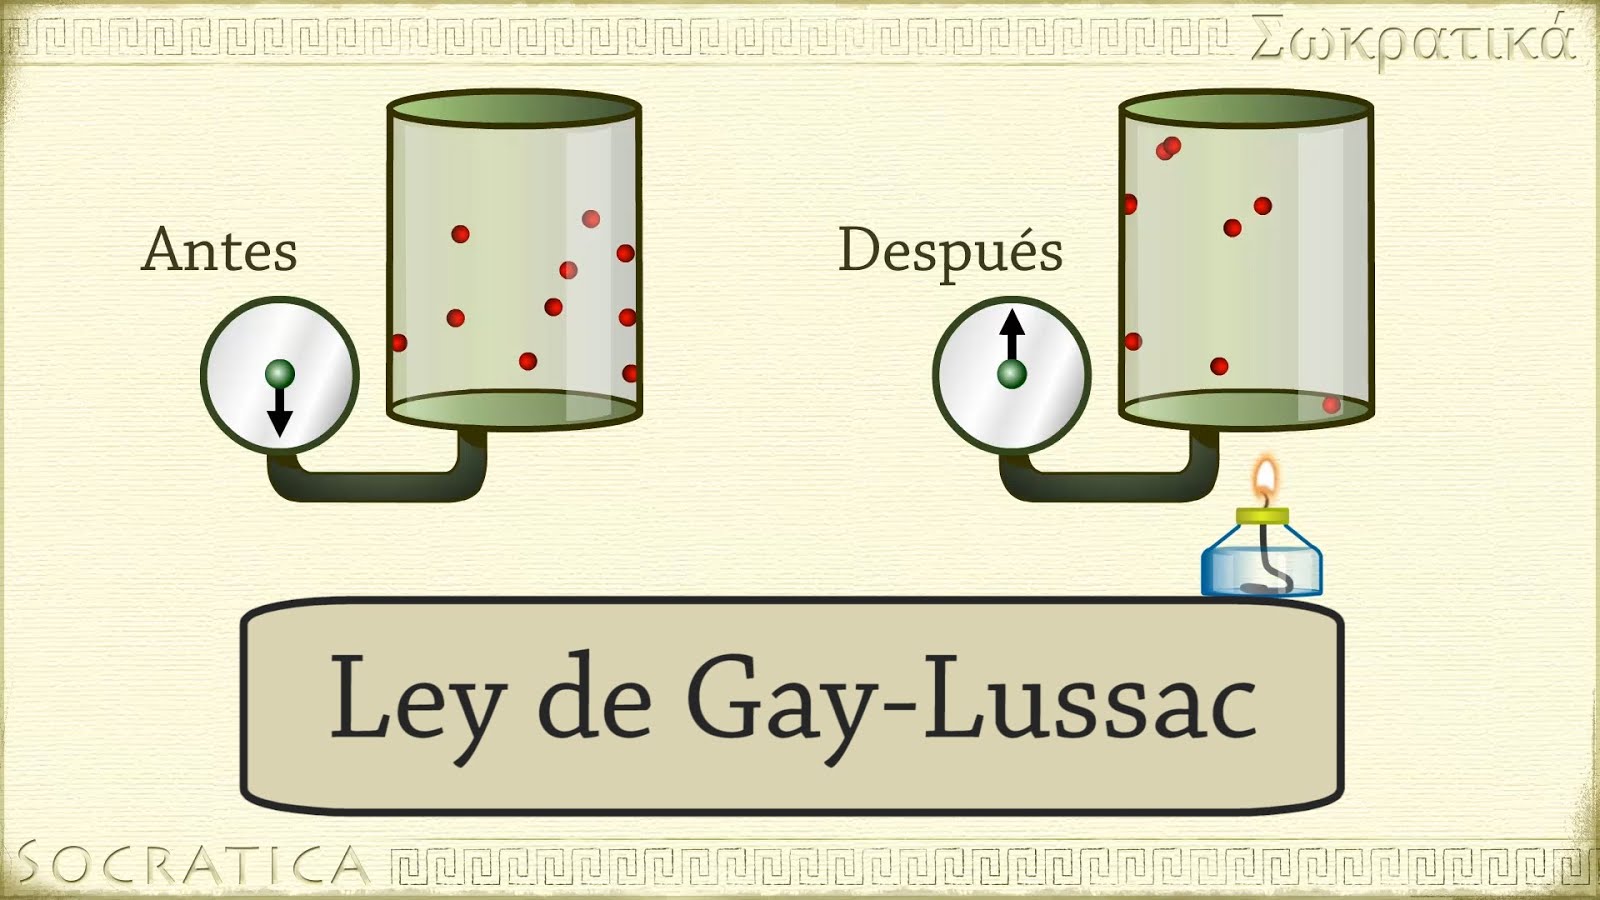 ley de gay-lussac